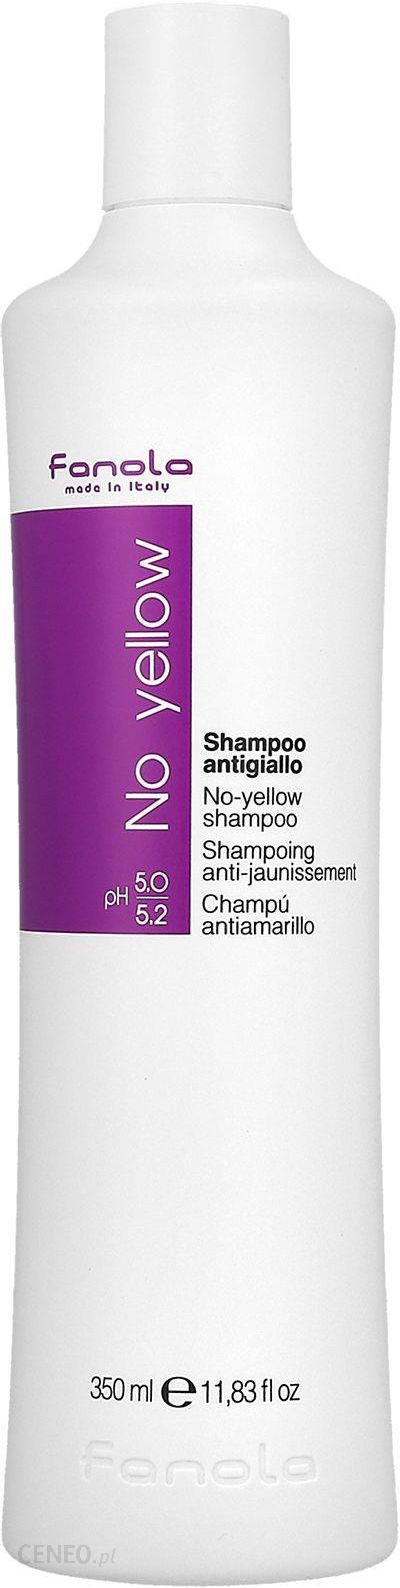 szampon do farbowanych włosów fanola yello czy orange